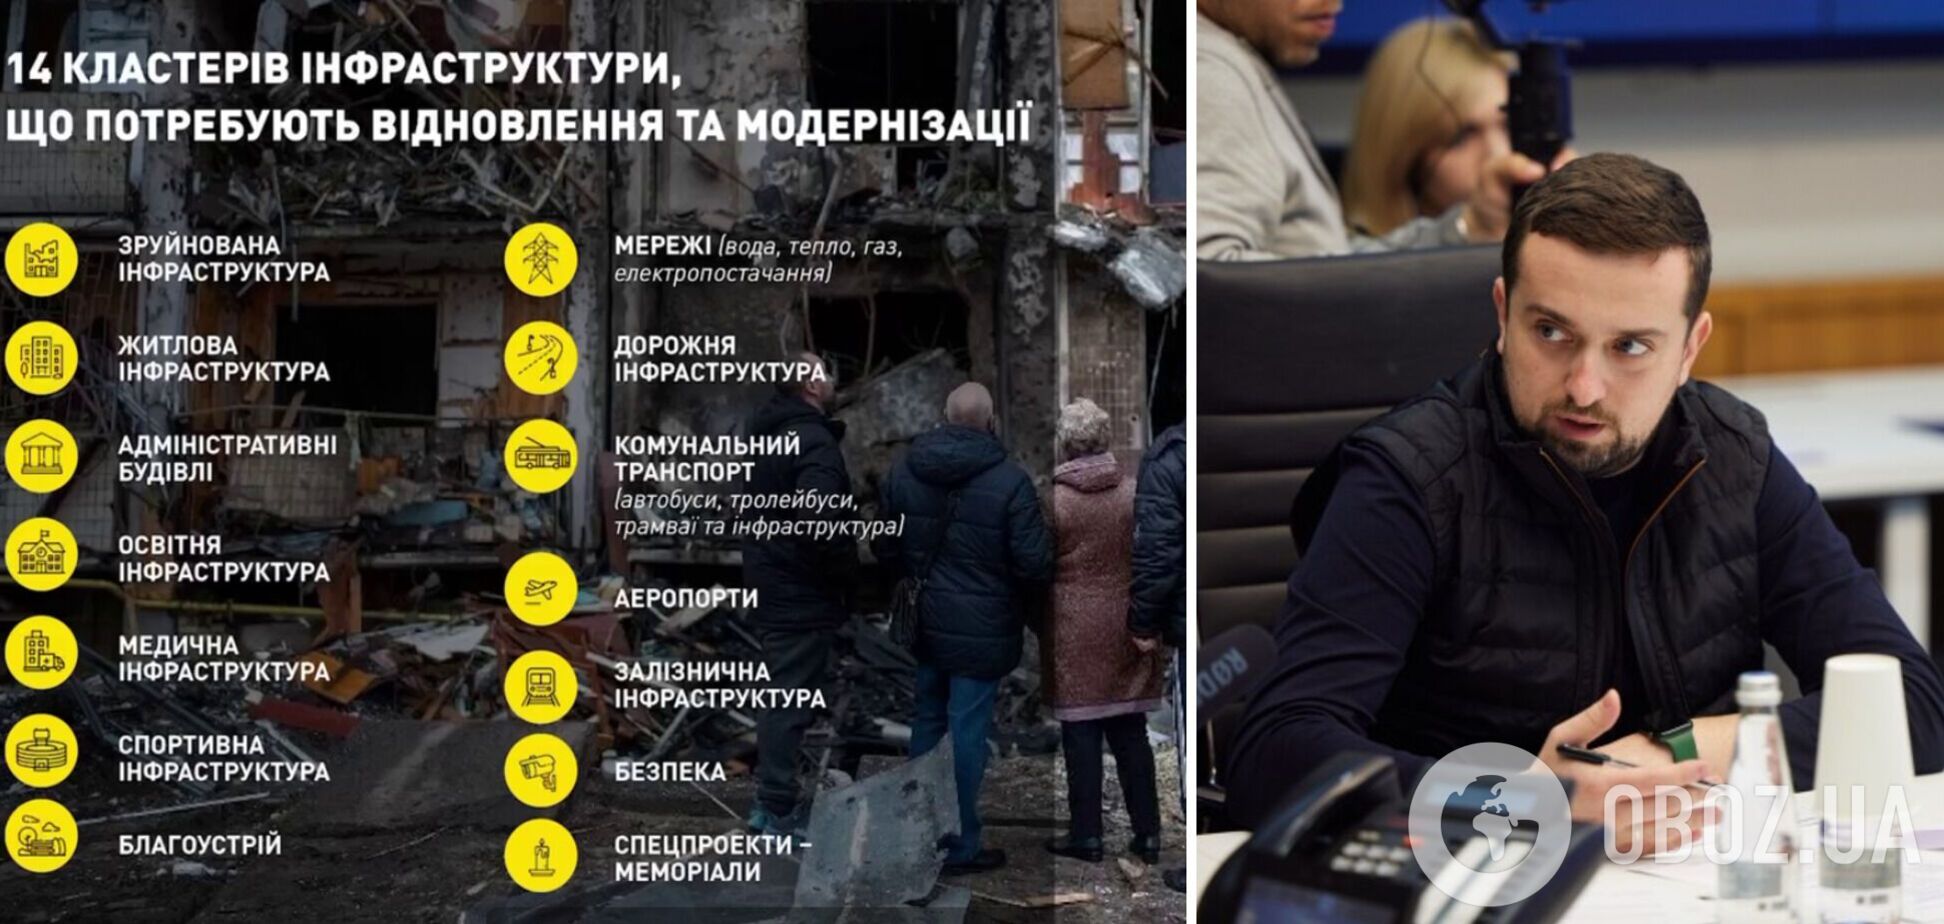 Государство должно предоставить почти 600 тысяч квартир для обеспечения жильем переселенцев, – Кирилл Тимошенко